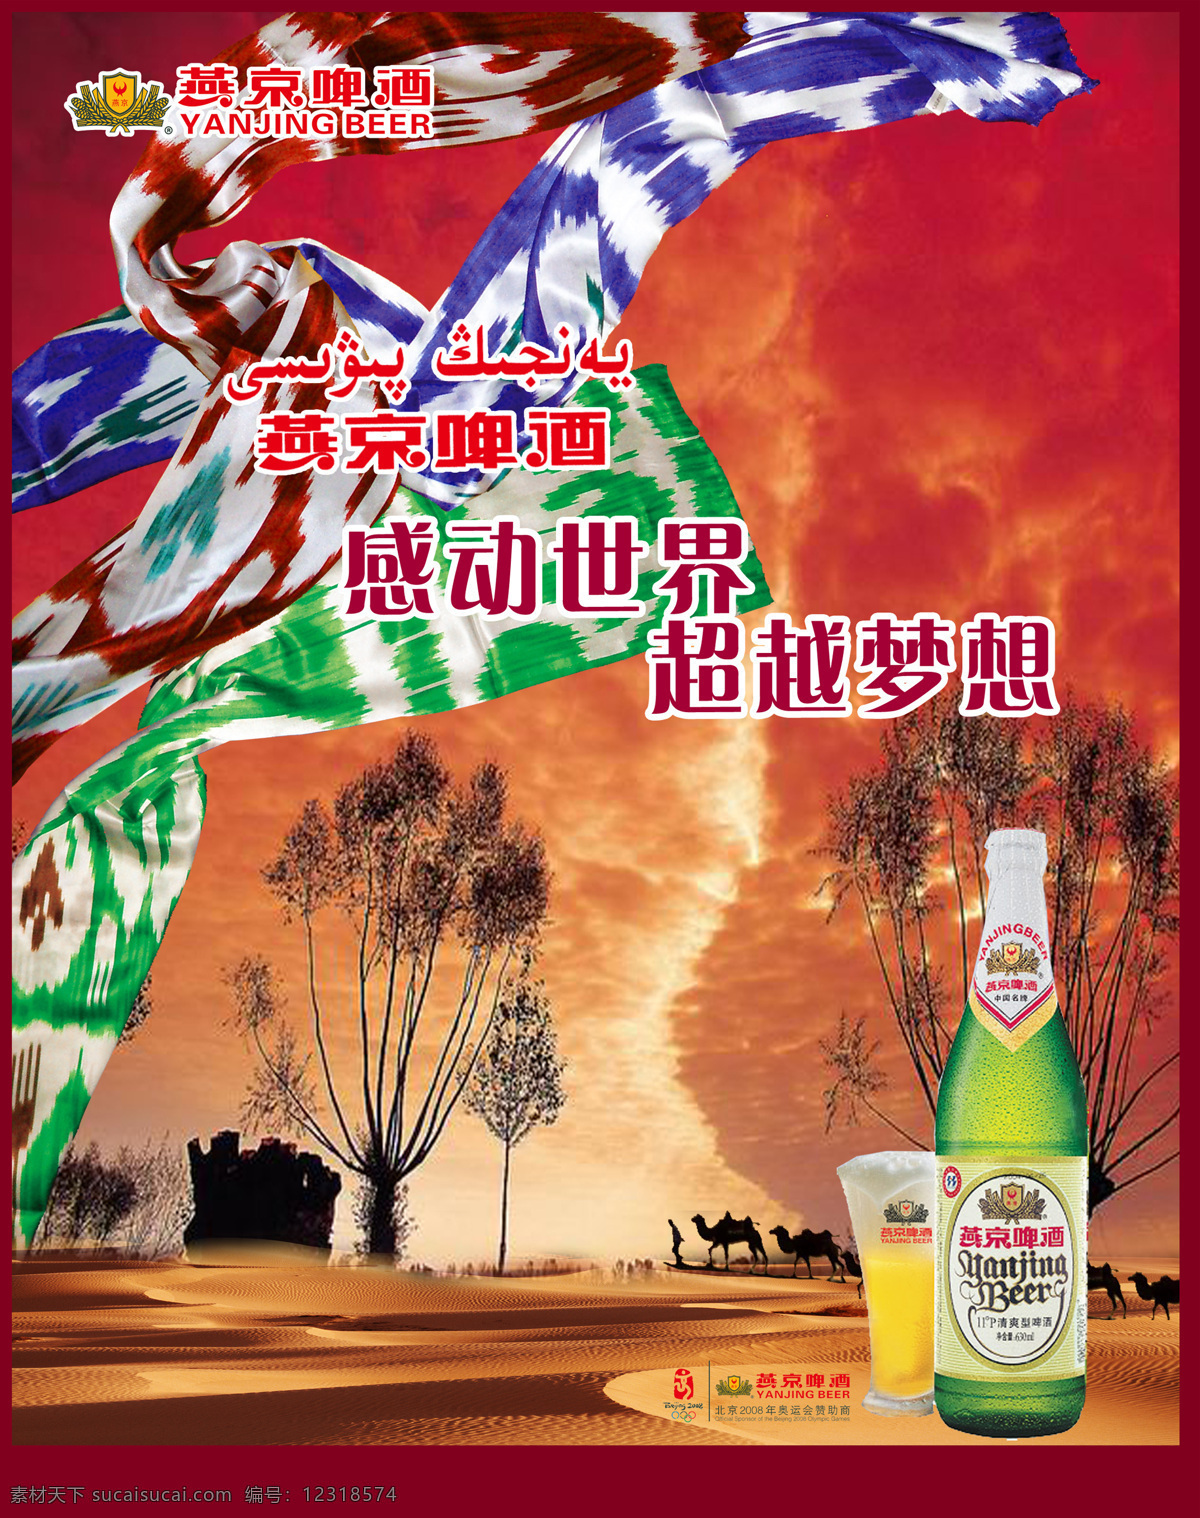 广告 设计图 设计图库 燕京啤酒海报 燕京啤酒 海报 设计素材 模板下载